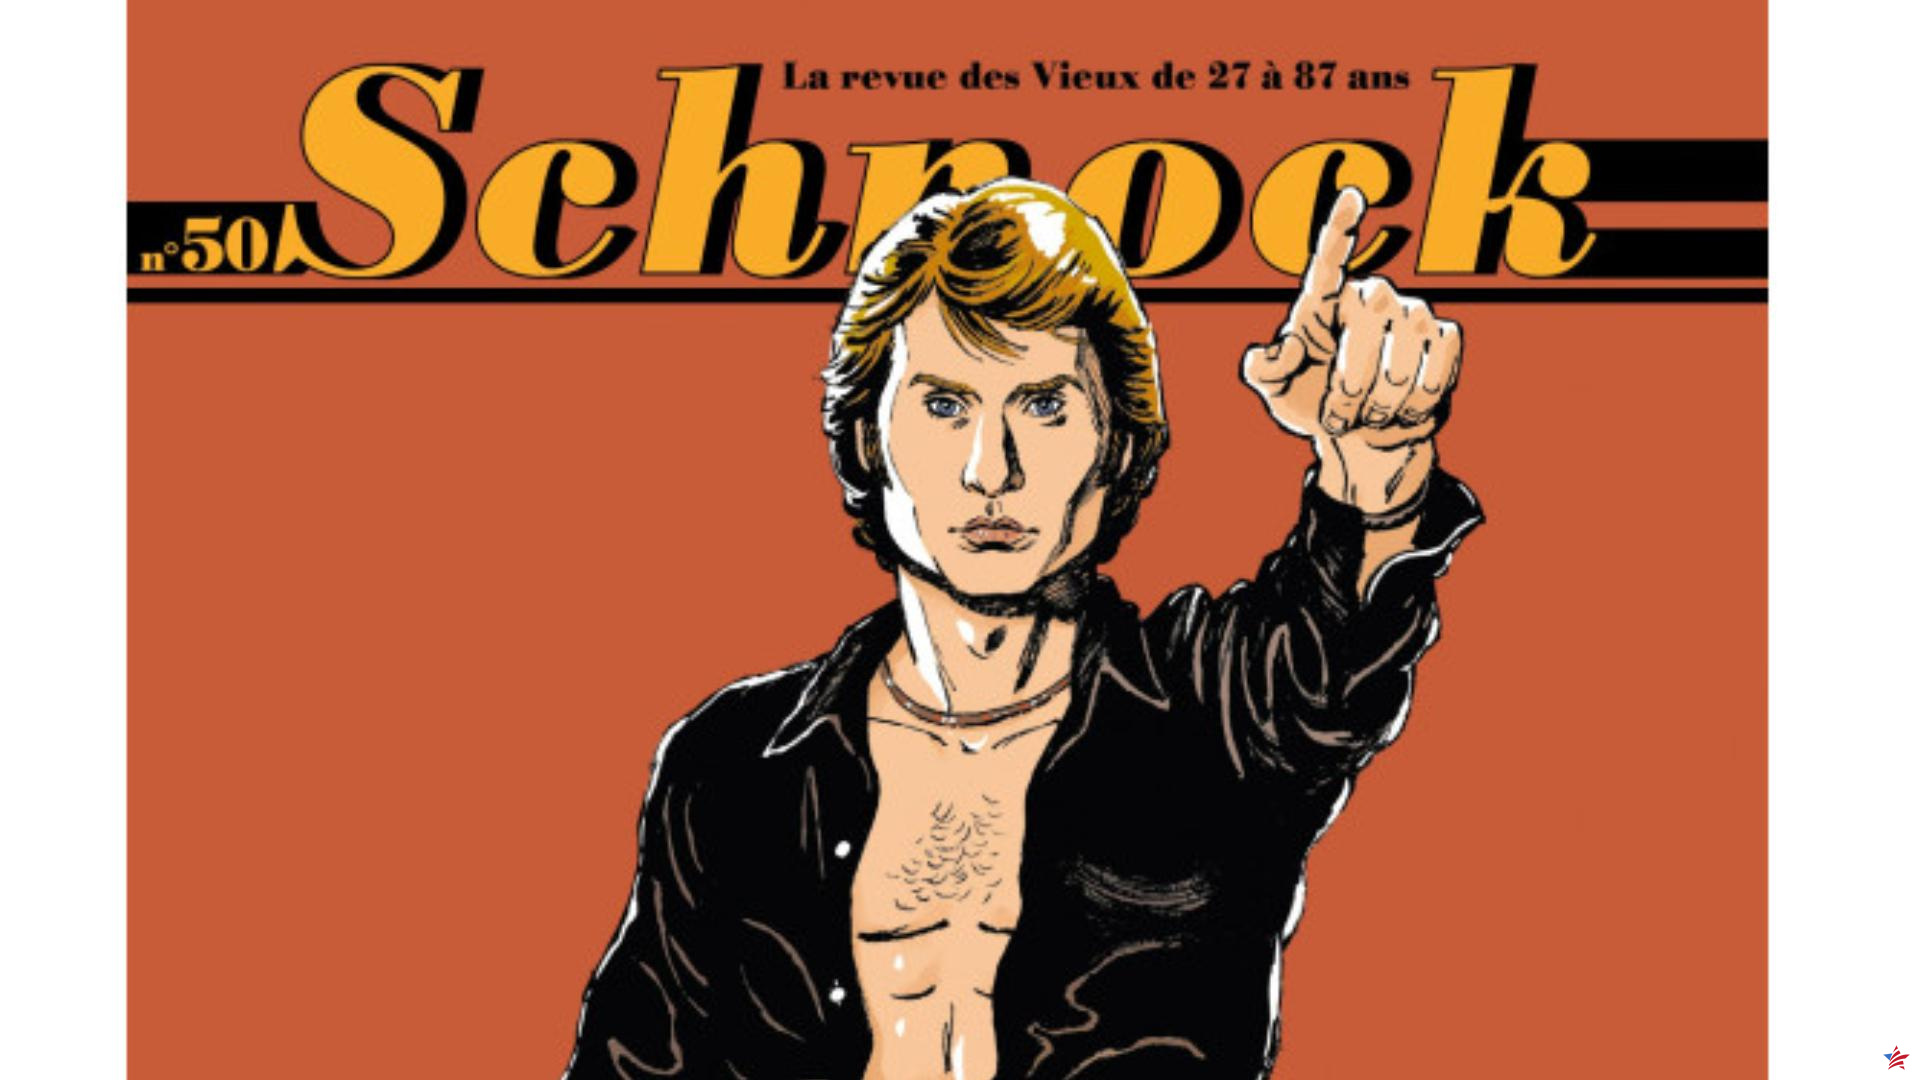 La revista cultural Schnock publica su número 50 dedicado a Johnny Hallyday